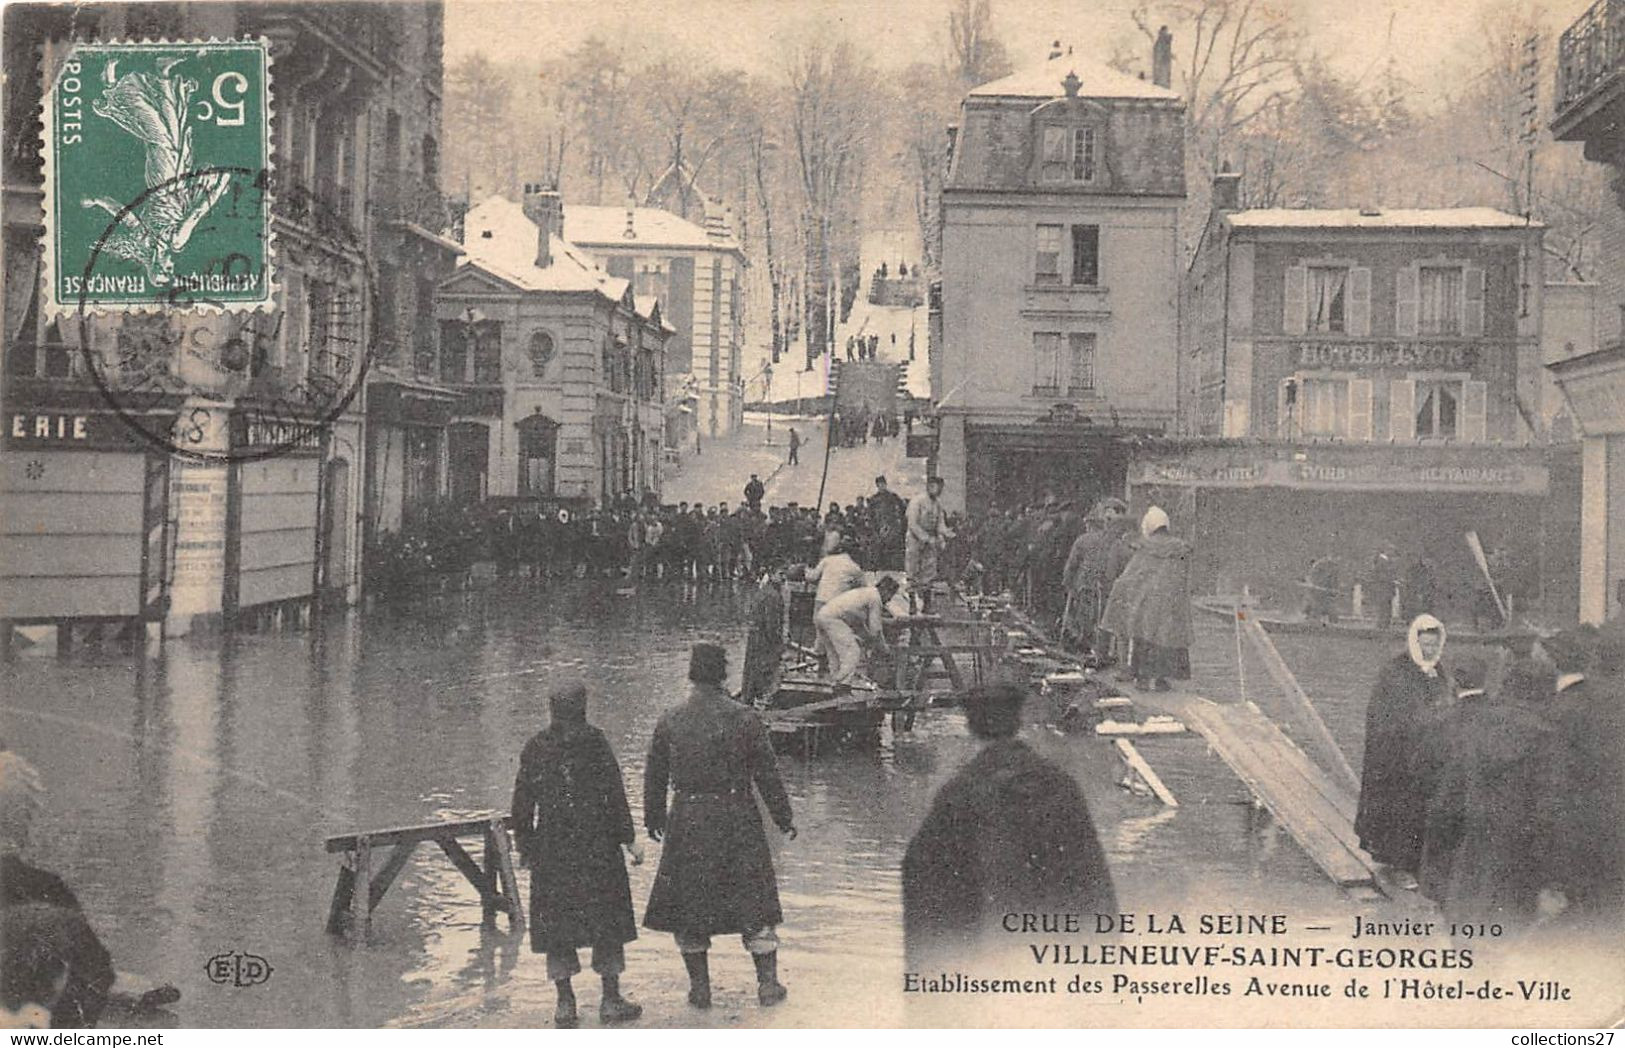 94-VILLENEUVE-SAINT-GEORGES- CRUE DE LA SEINE JANVIER 1910, ETABLISSEMENT DES PASSERELLES AVE DE L'HÔTEL DE VILLE - Villeneuve Saint Georges